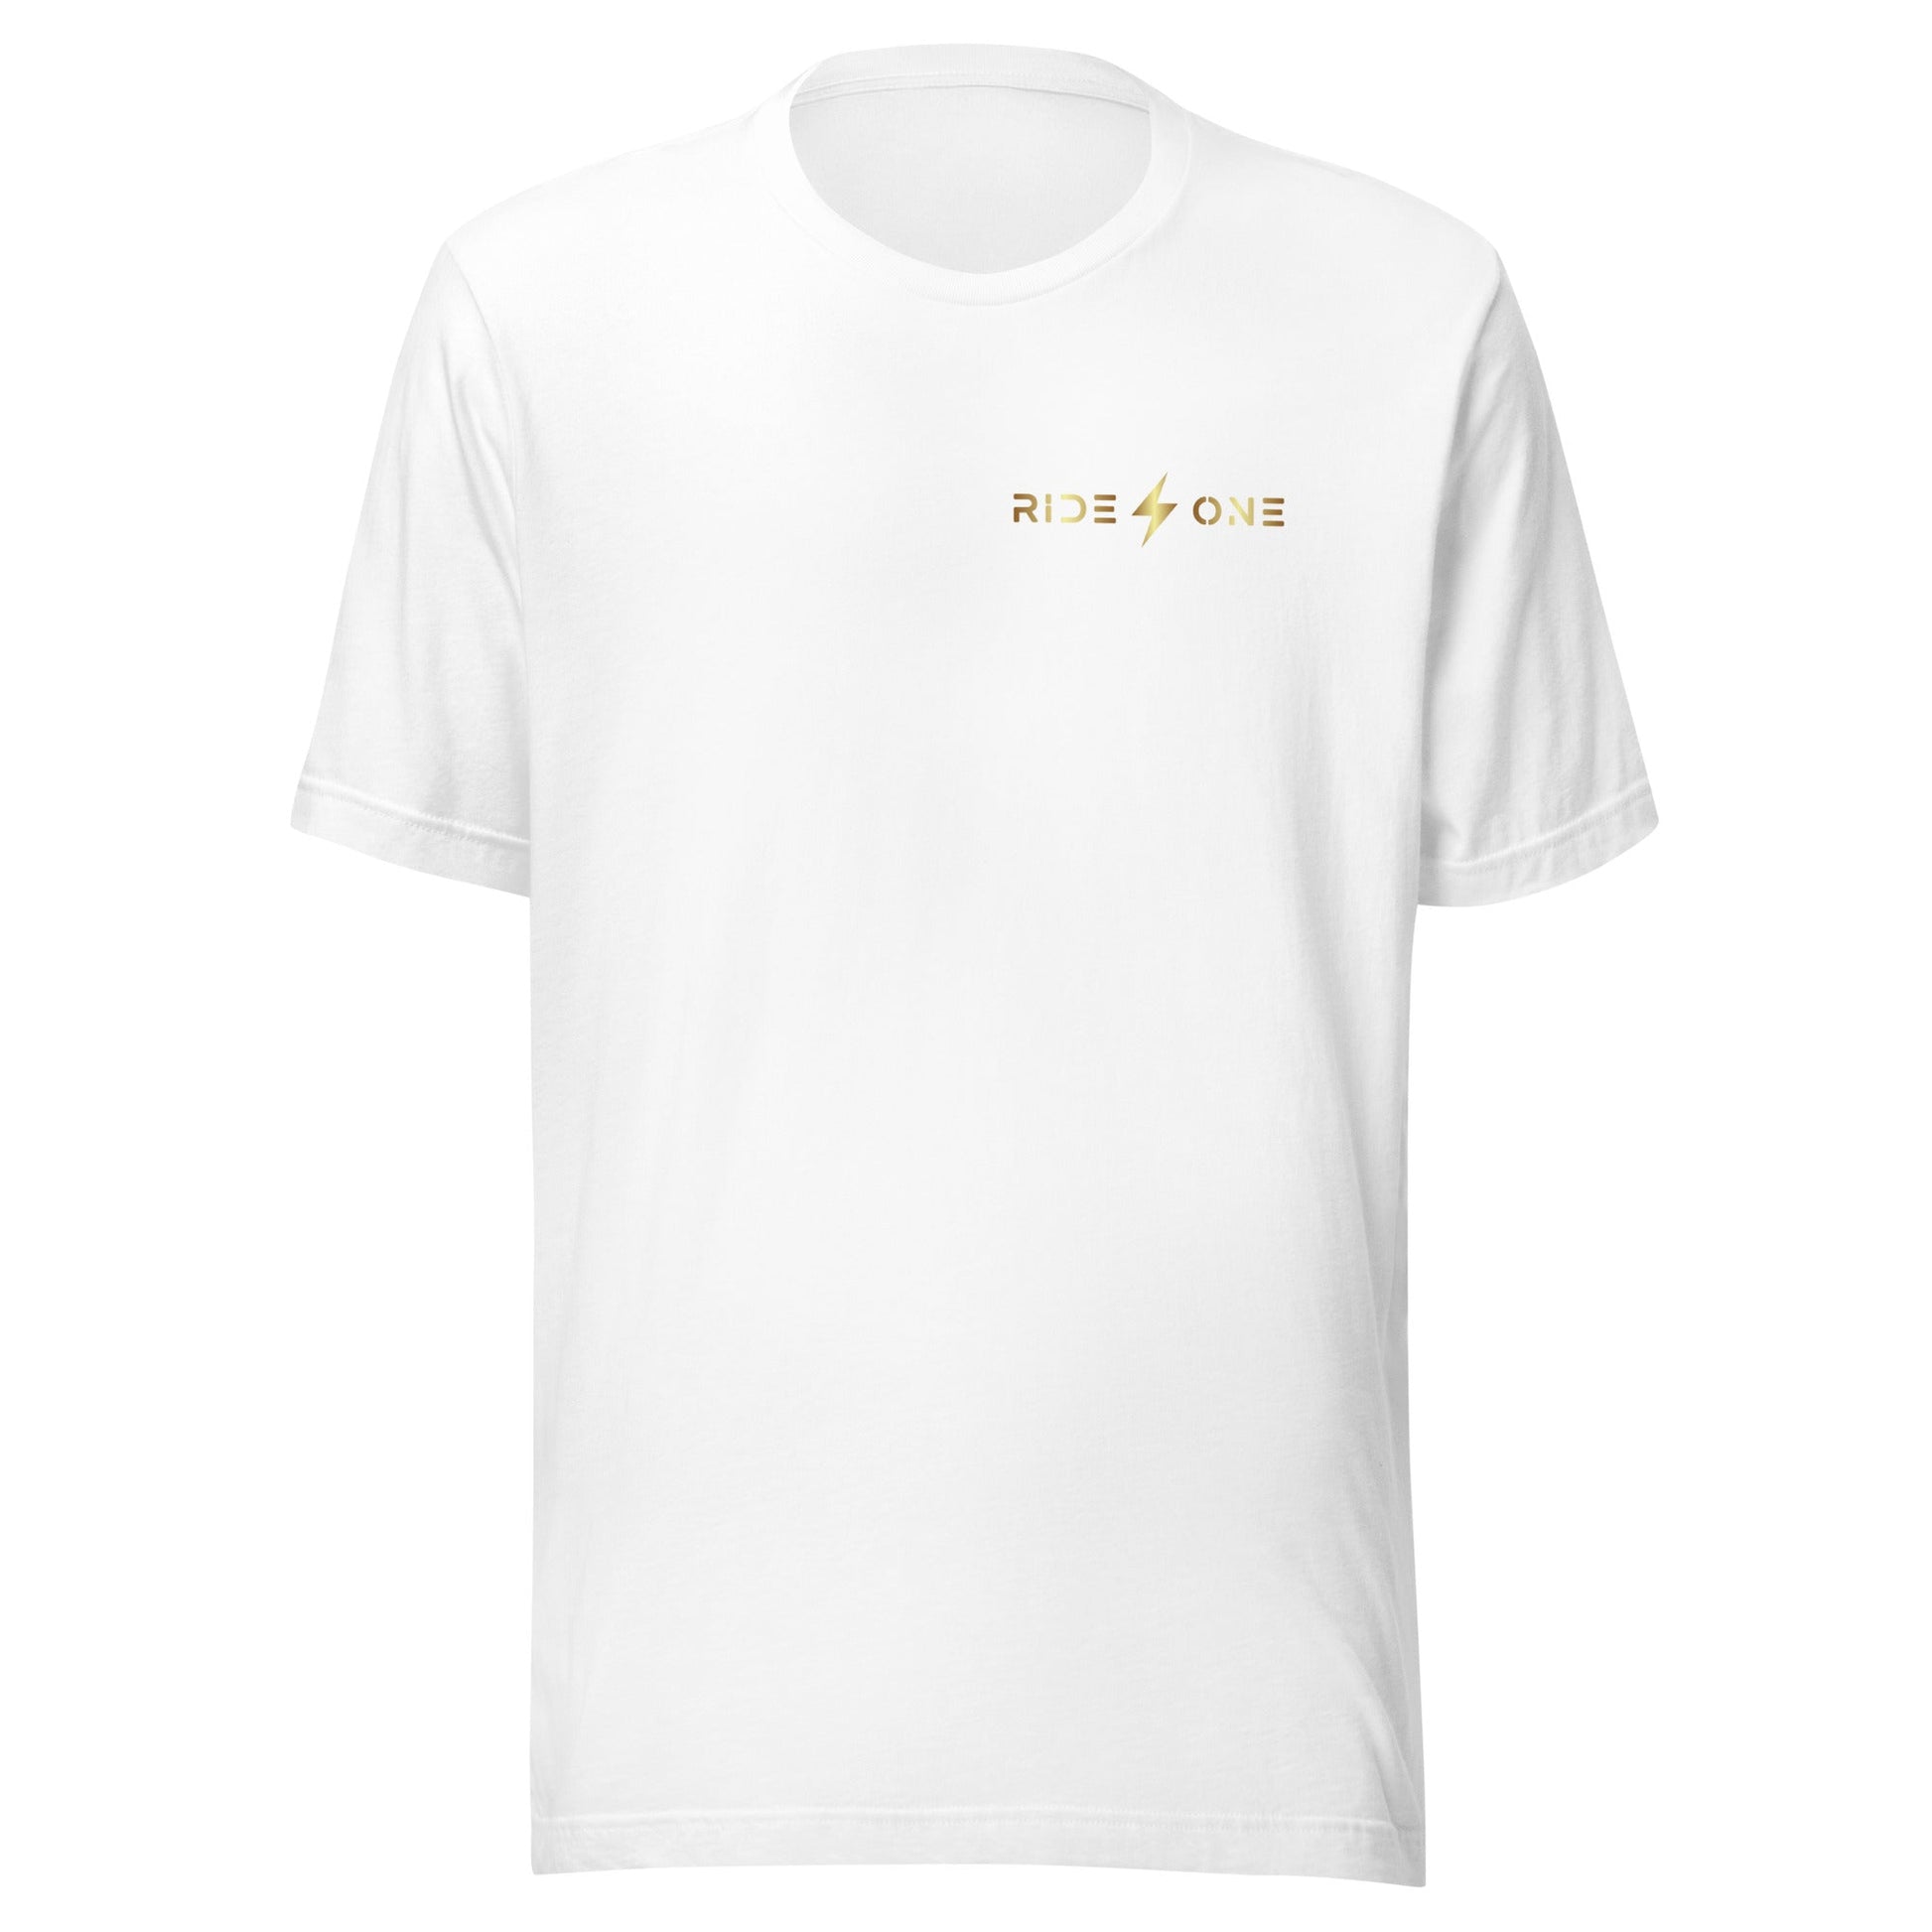 Ride One clothing White / XS Unisex t-shirt (Ride One)